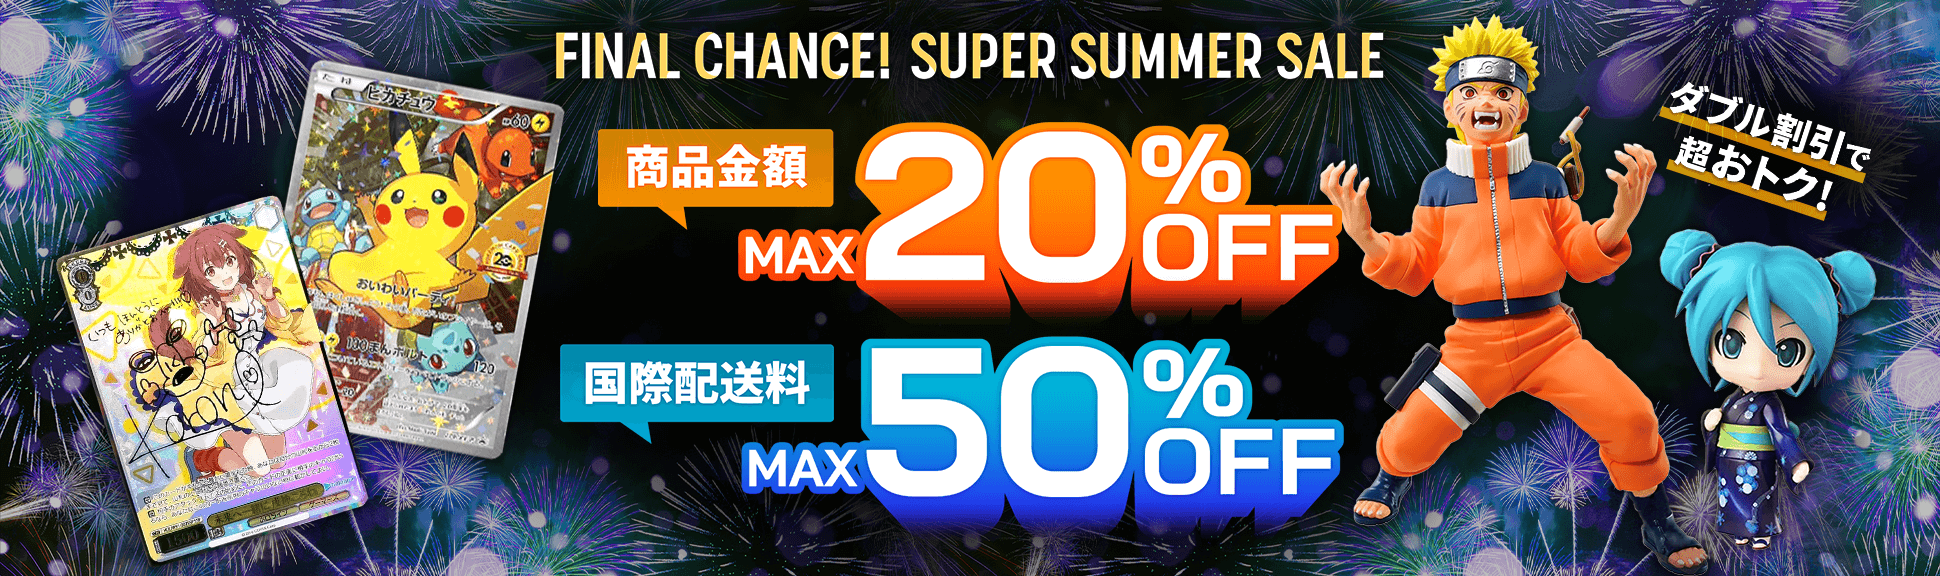 Final Chance! Super Summer Sale